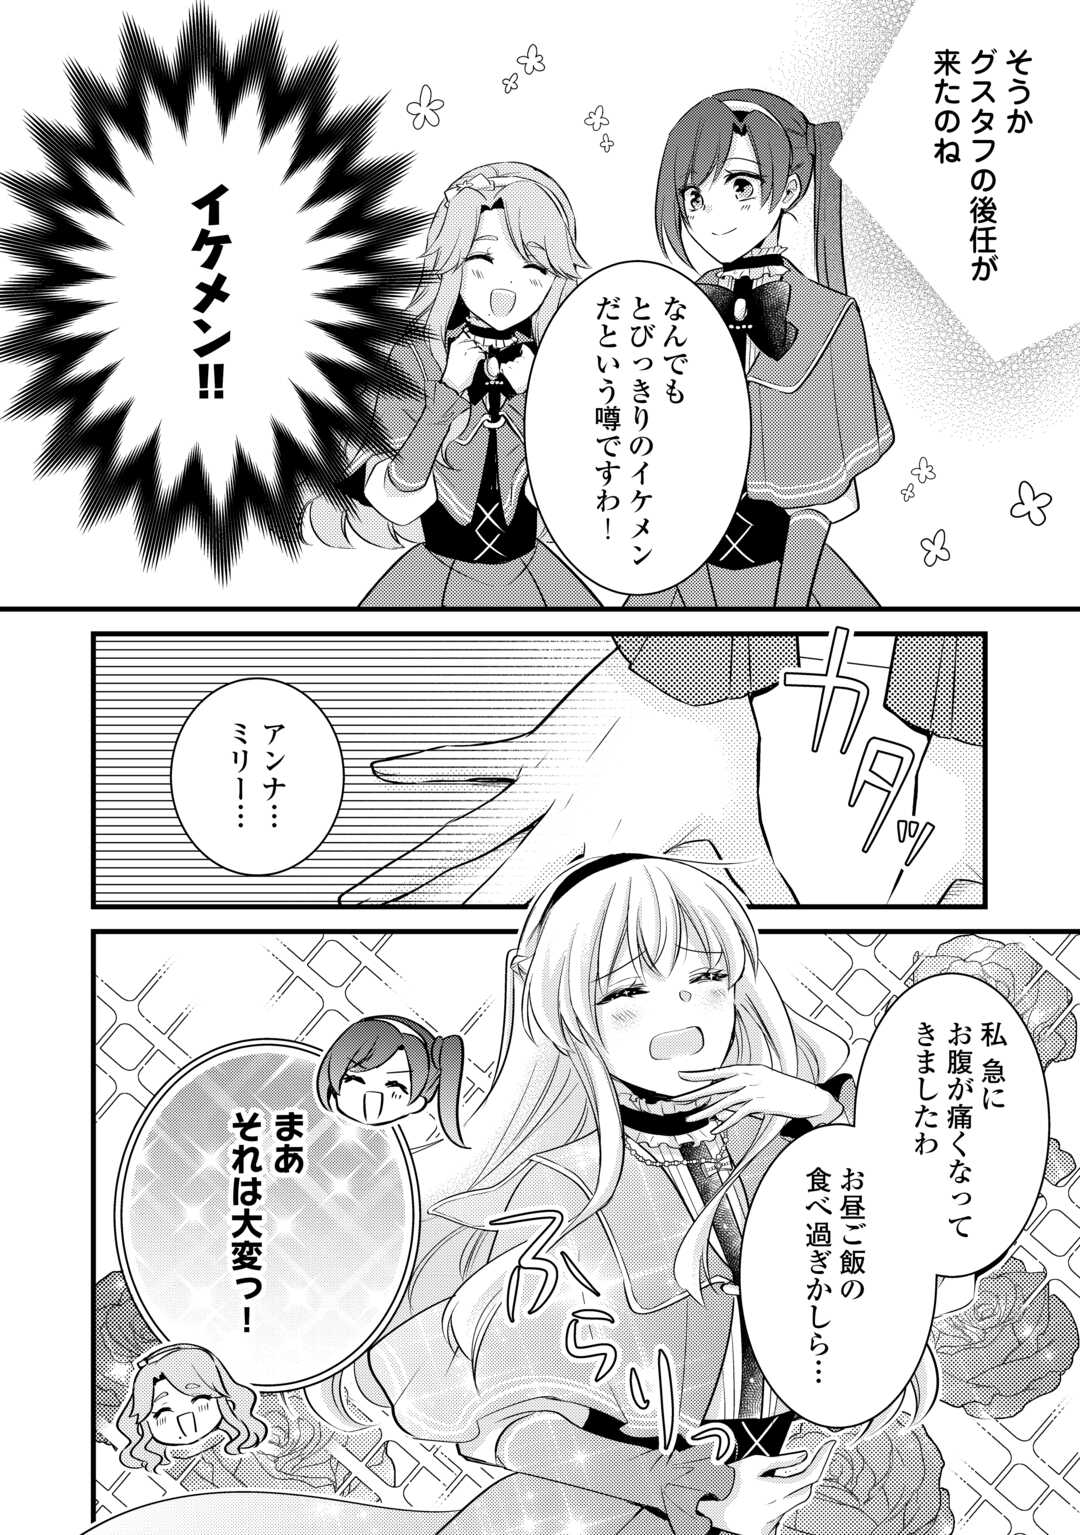 Akuyaku Reijou wa Heroine wo Ijimeteiru Baai de wa Nai - Chapter 21 - Page 2